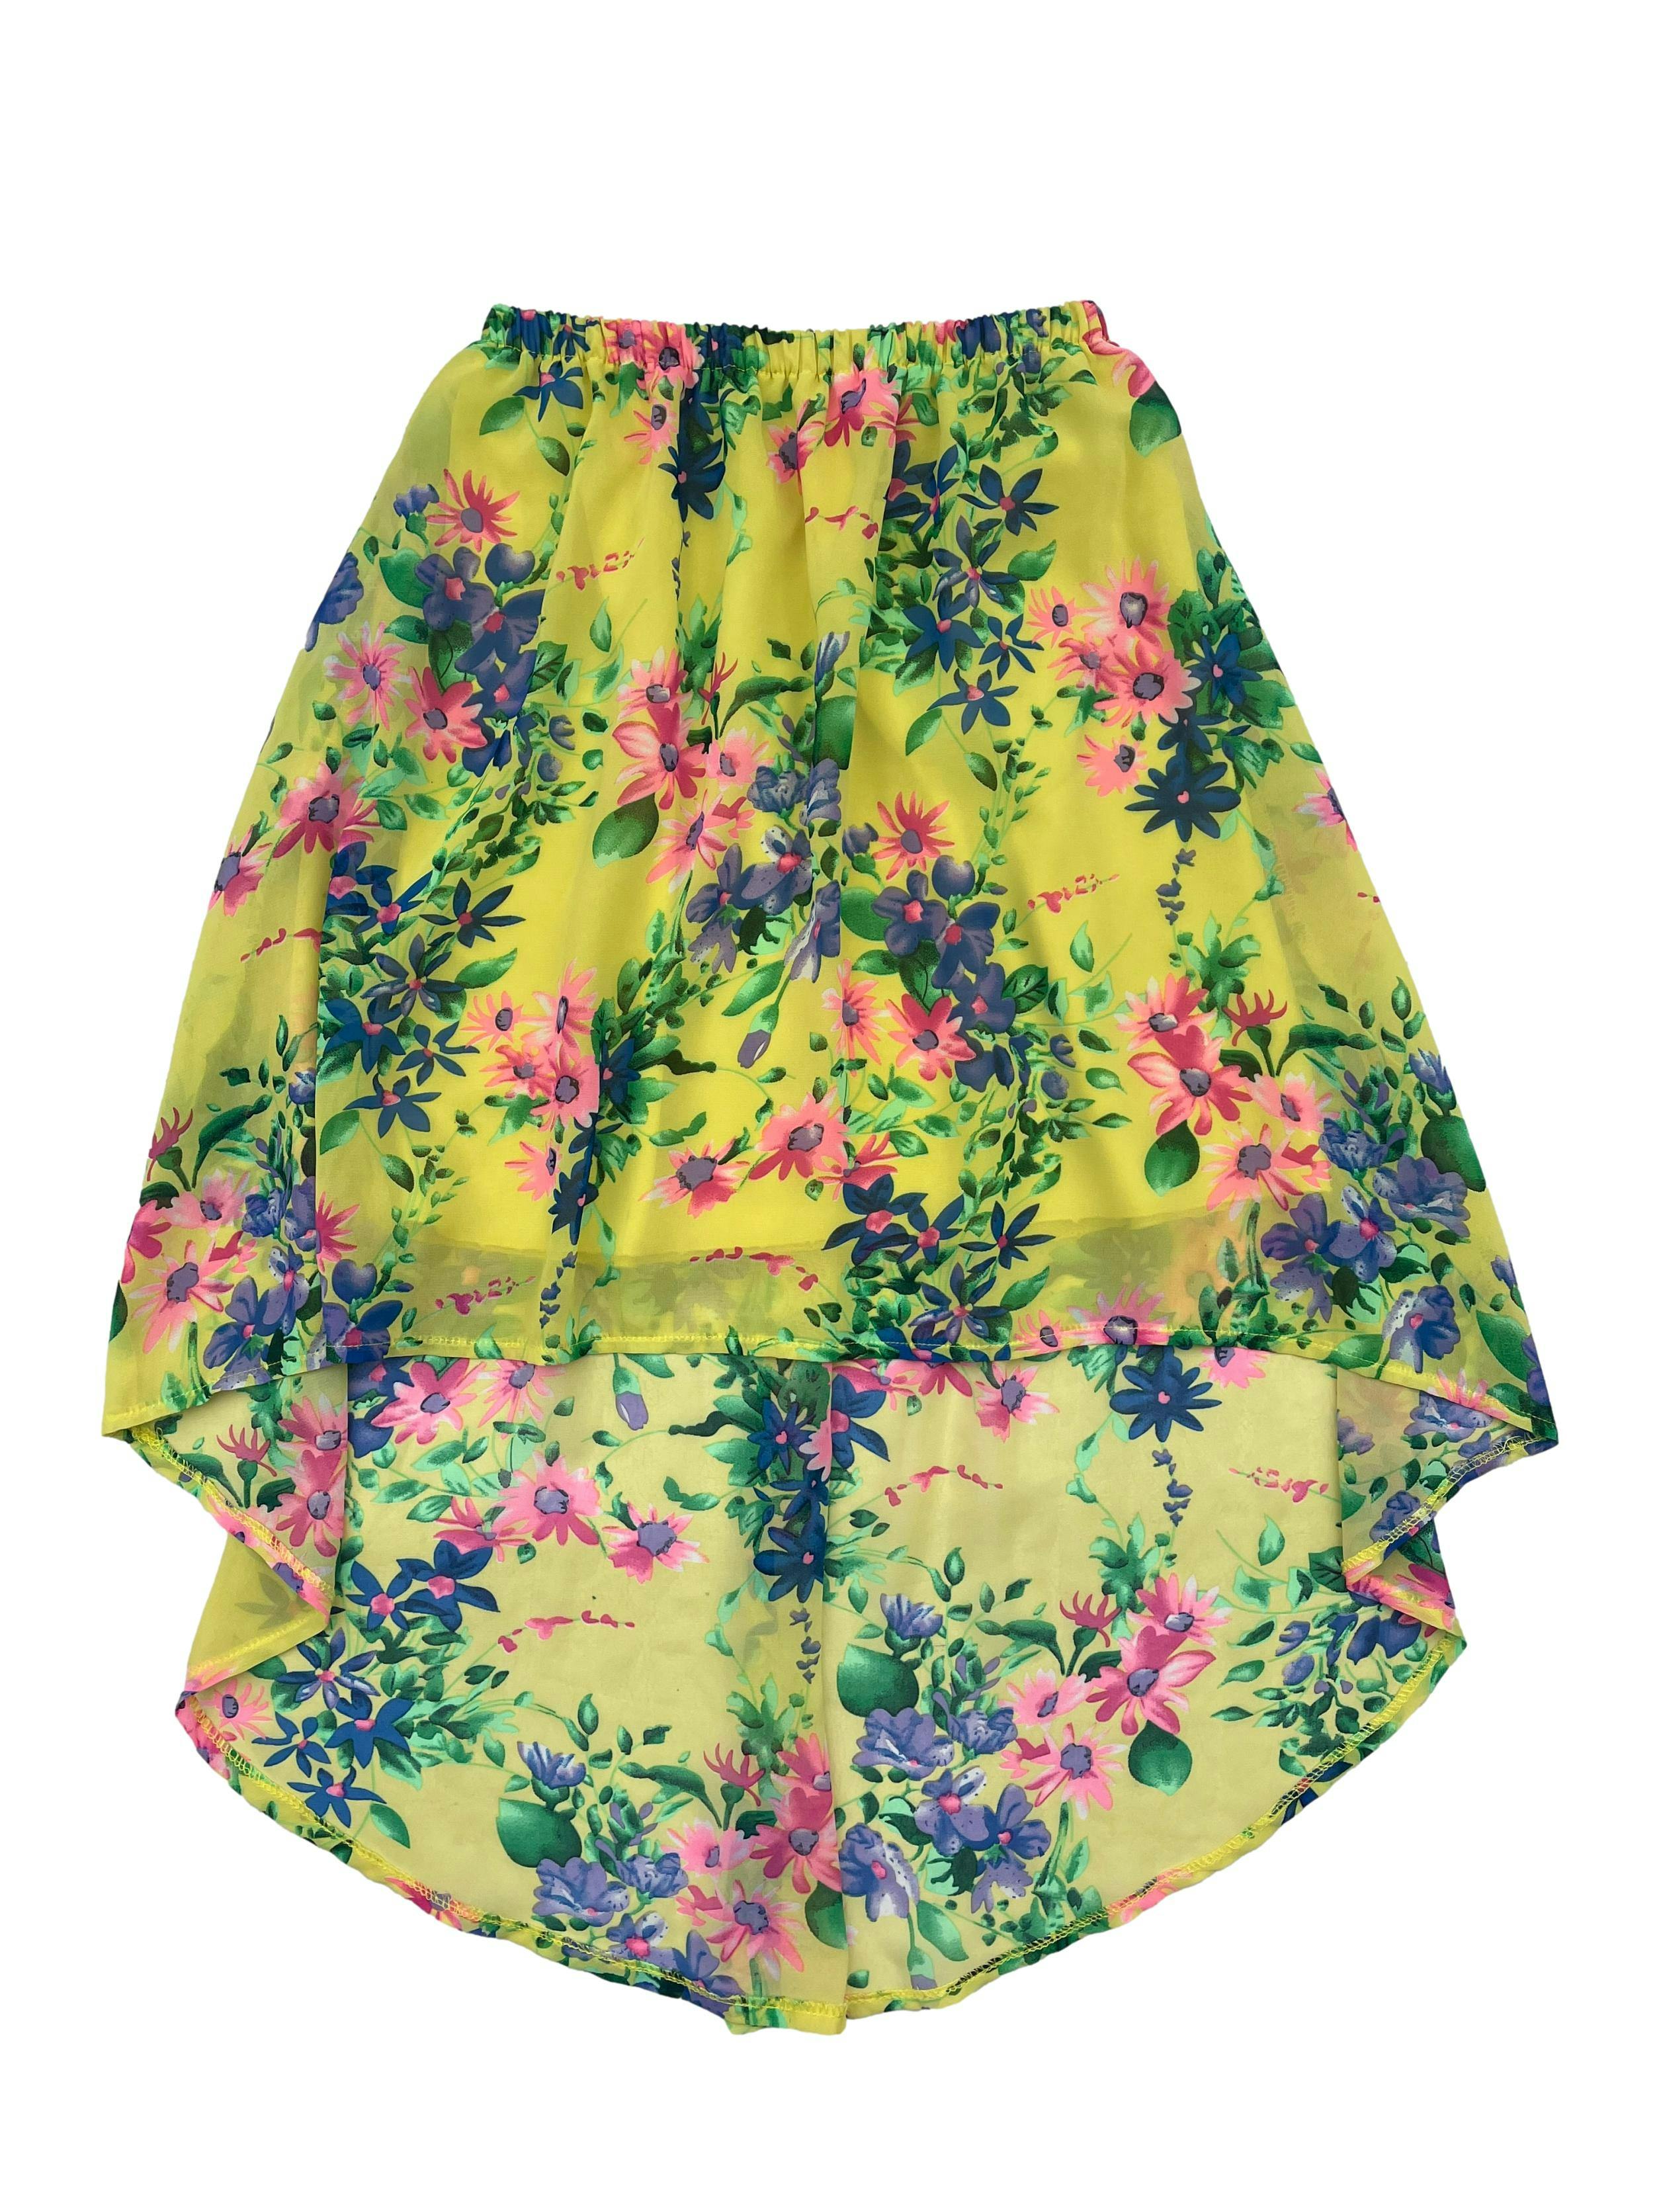 Falda asimétrica de gasa con estampado floral y forro, cintura elasticada. Cintura 50cm sin estirar, Largo 45-70cm.